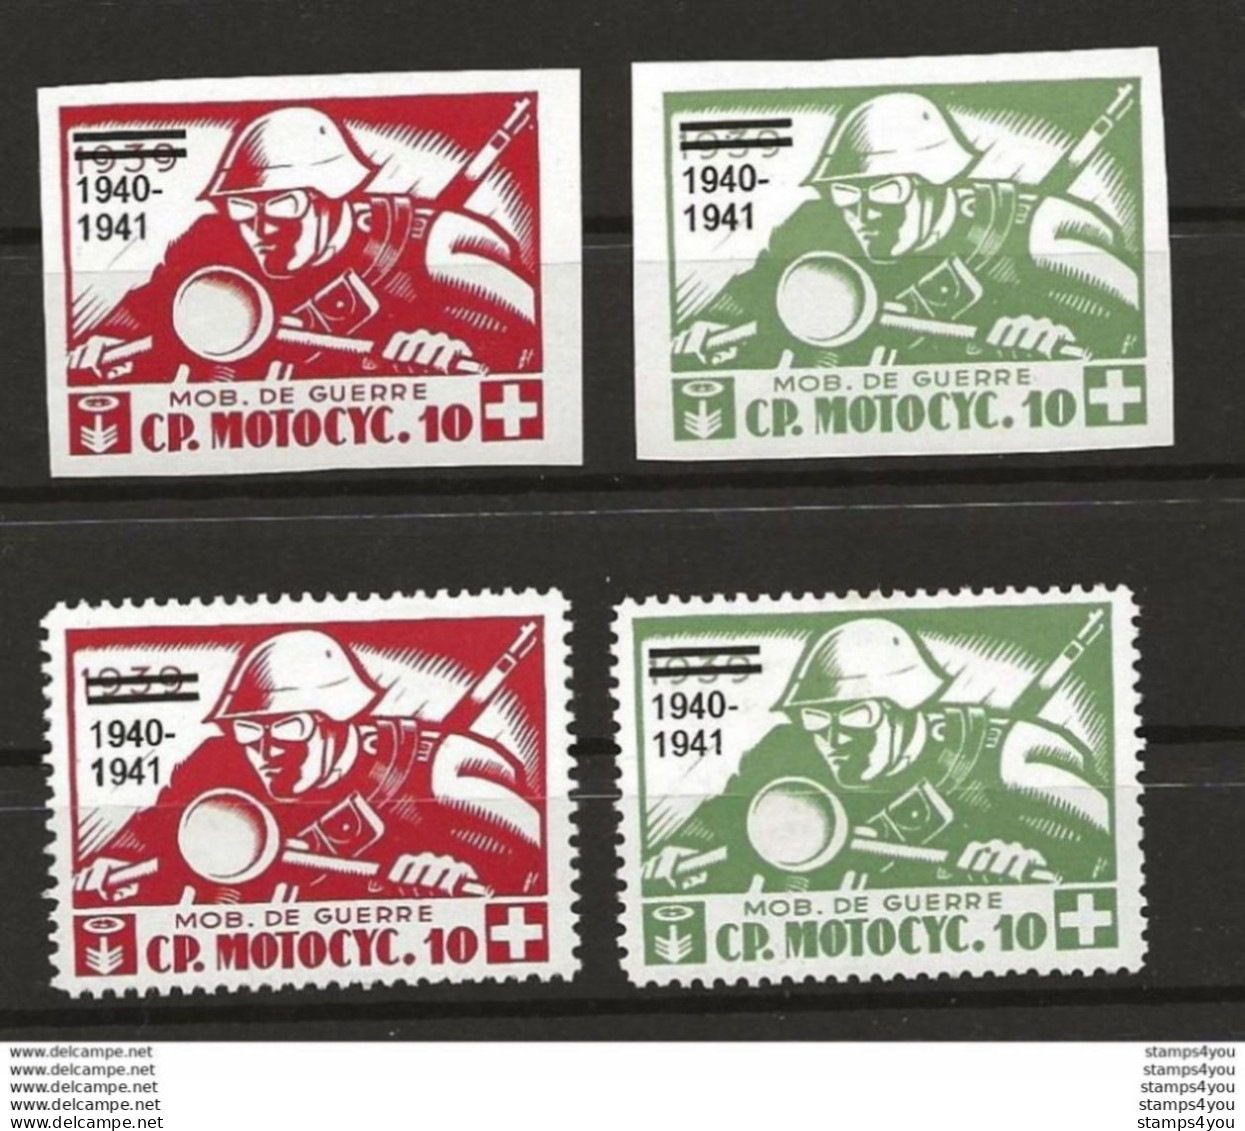 407 - 40 - 2 Timbres Dentelés Et 2 Timbres Non-dentelés "Cp. Motocyc. 10" Surchargé 1940 - 1941 - Labels